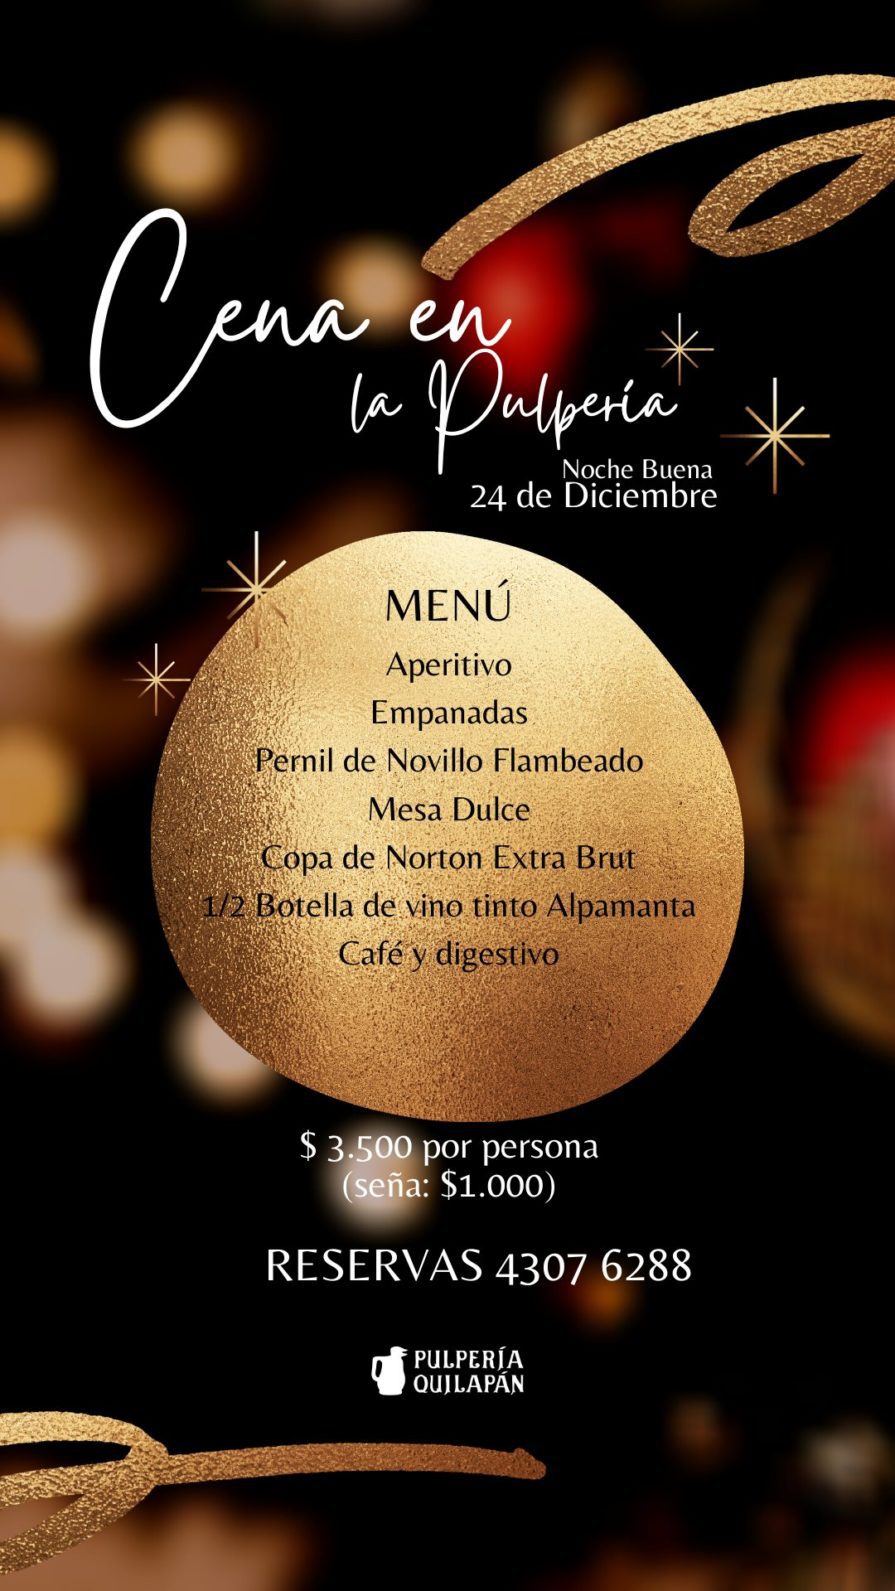 Cena en la pulpería Noche Buena 24 de Diciembre 2020